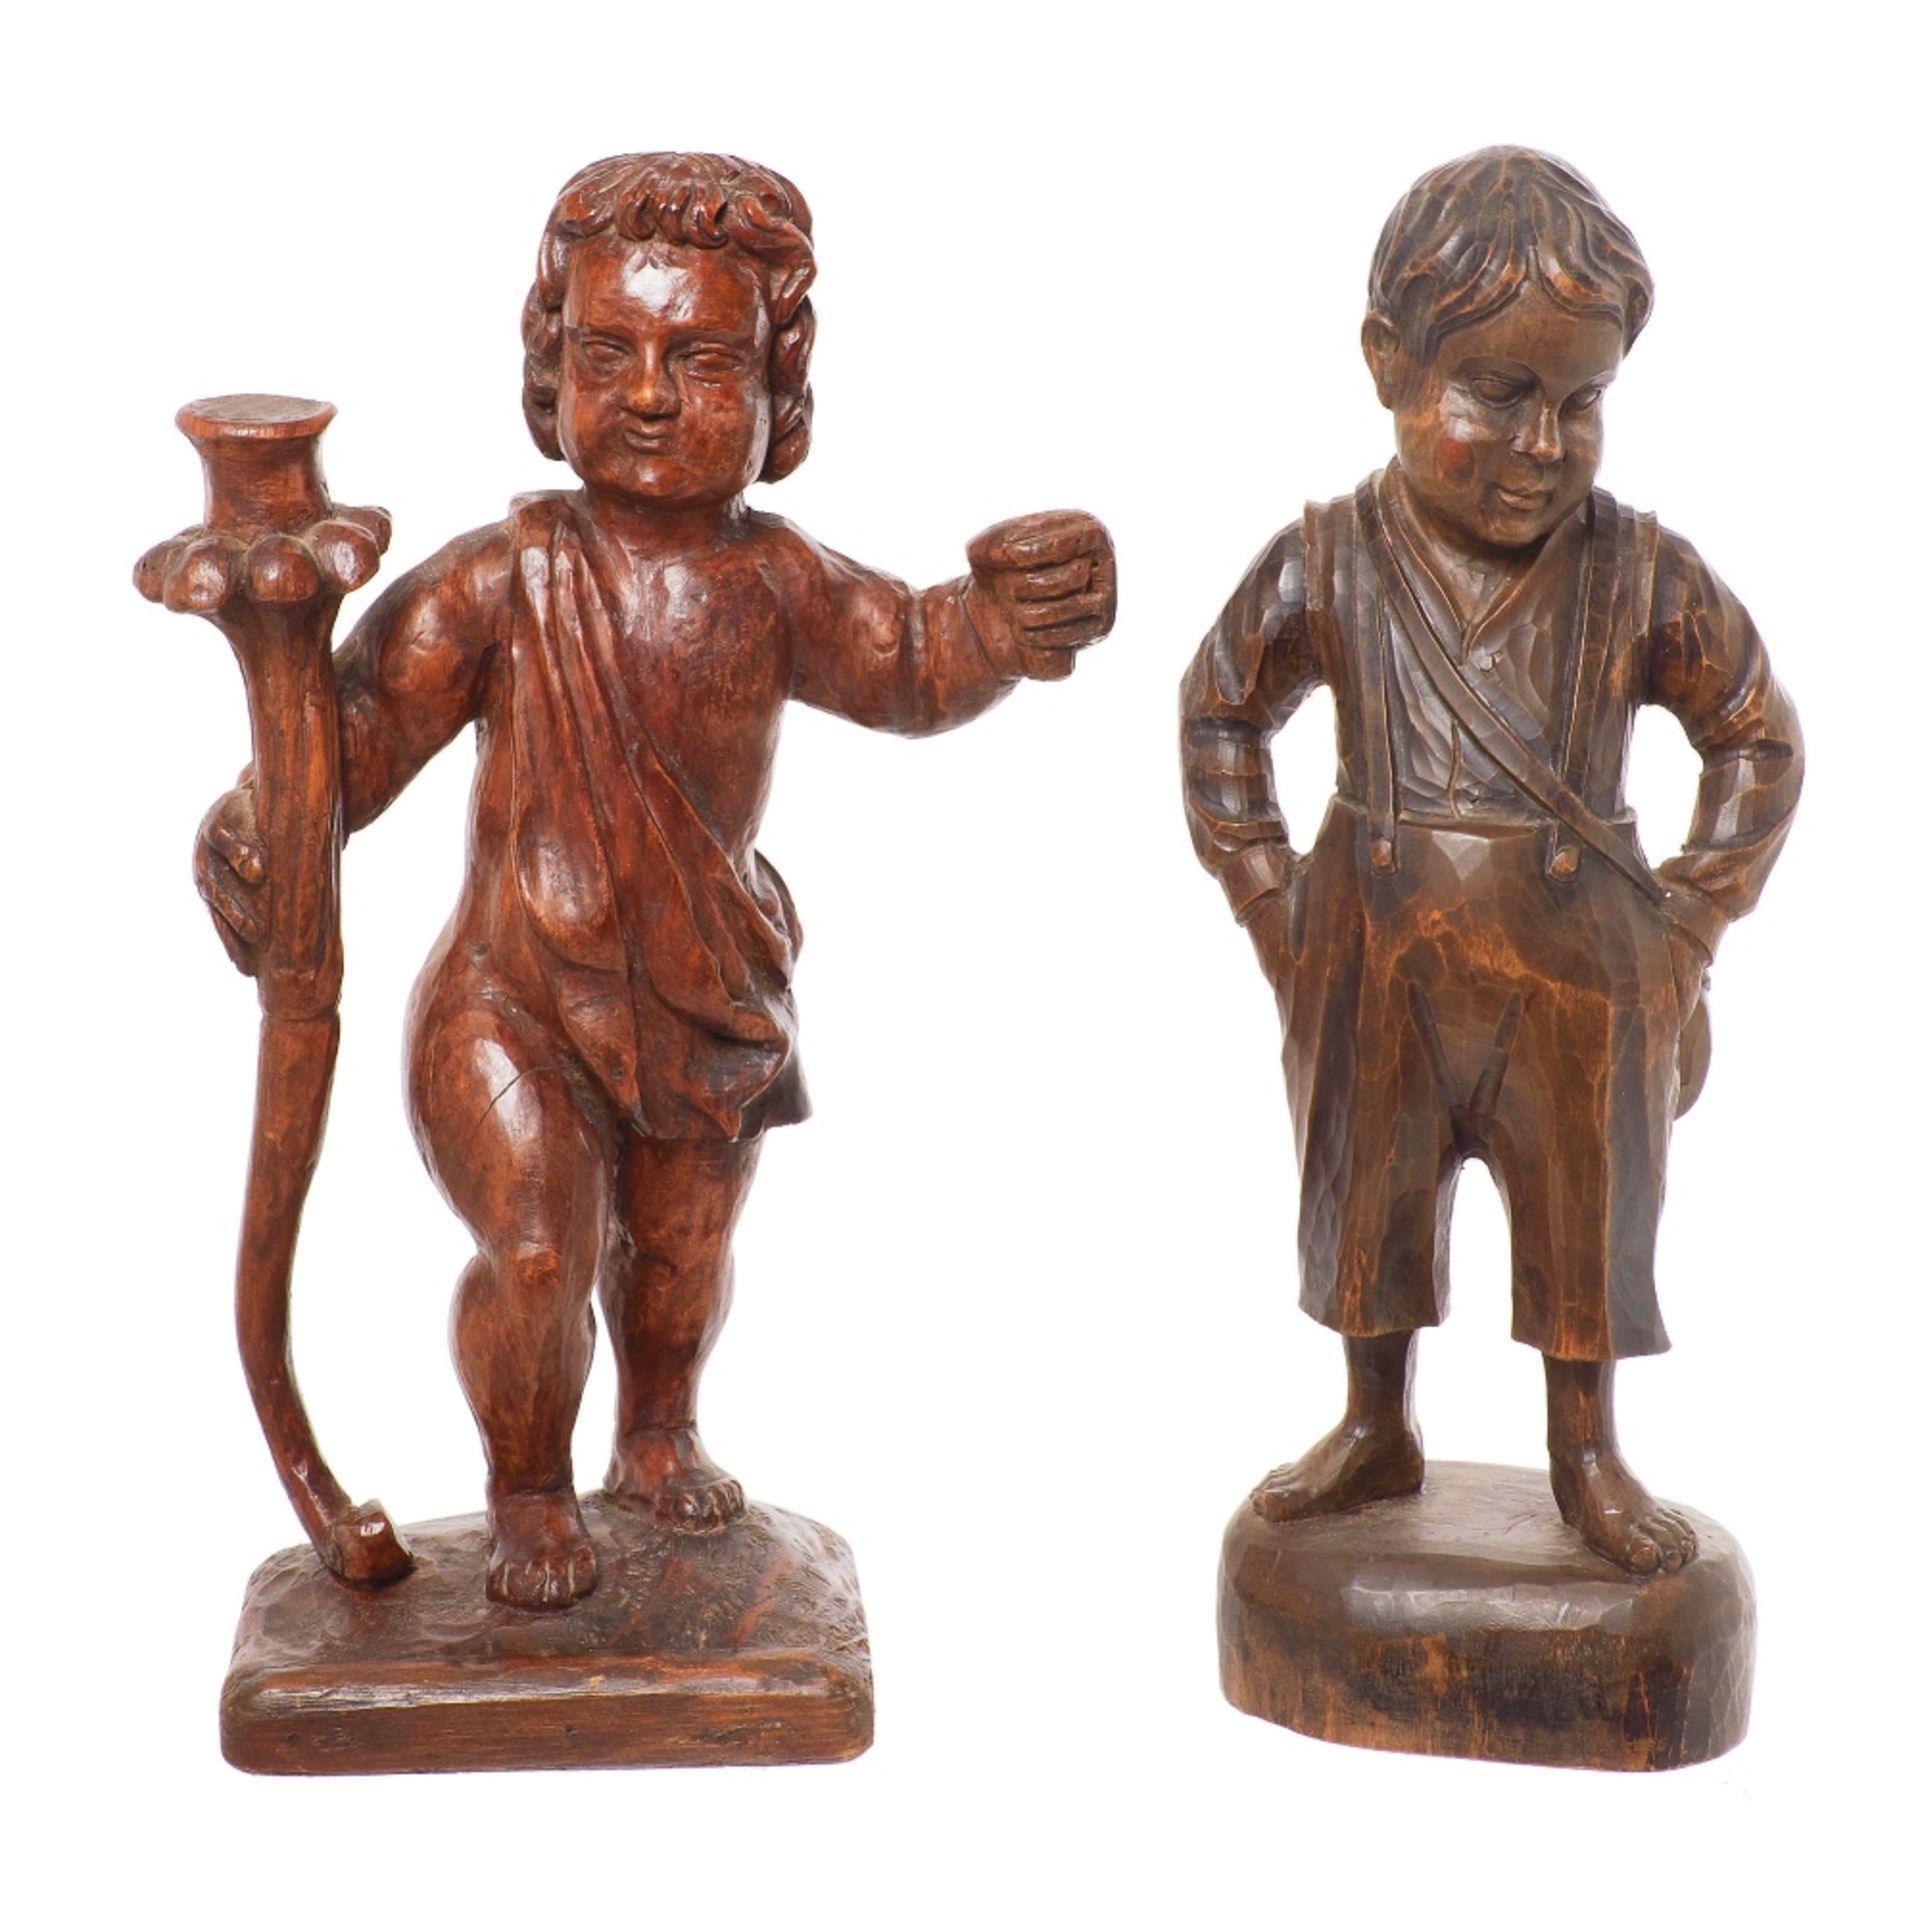 Escuela española, fles. del s.XIX. Niño y Niño torchero. Pareja de esculturas en madera tallada.